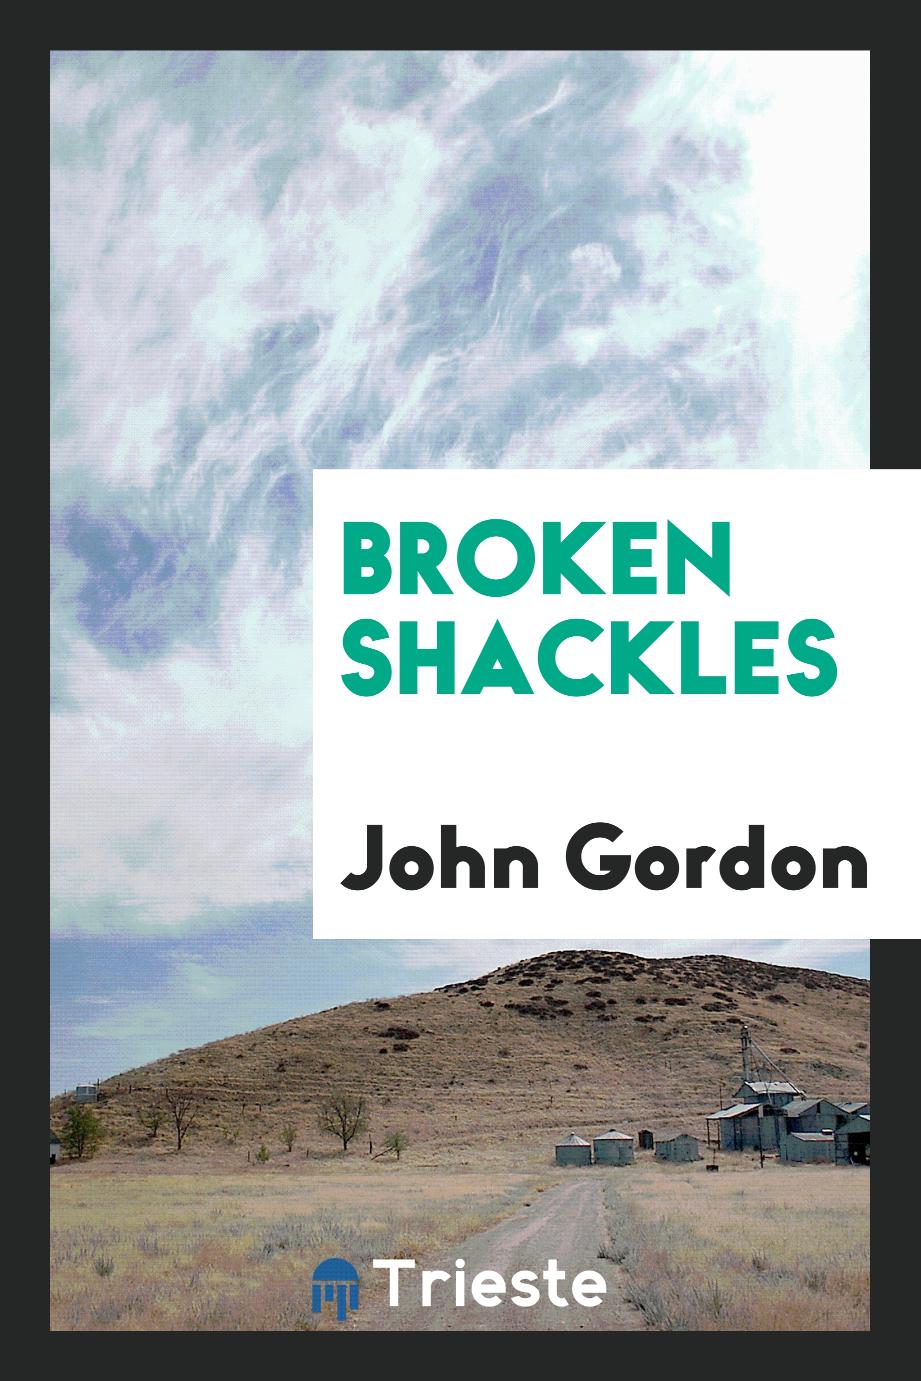 Broken shackles